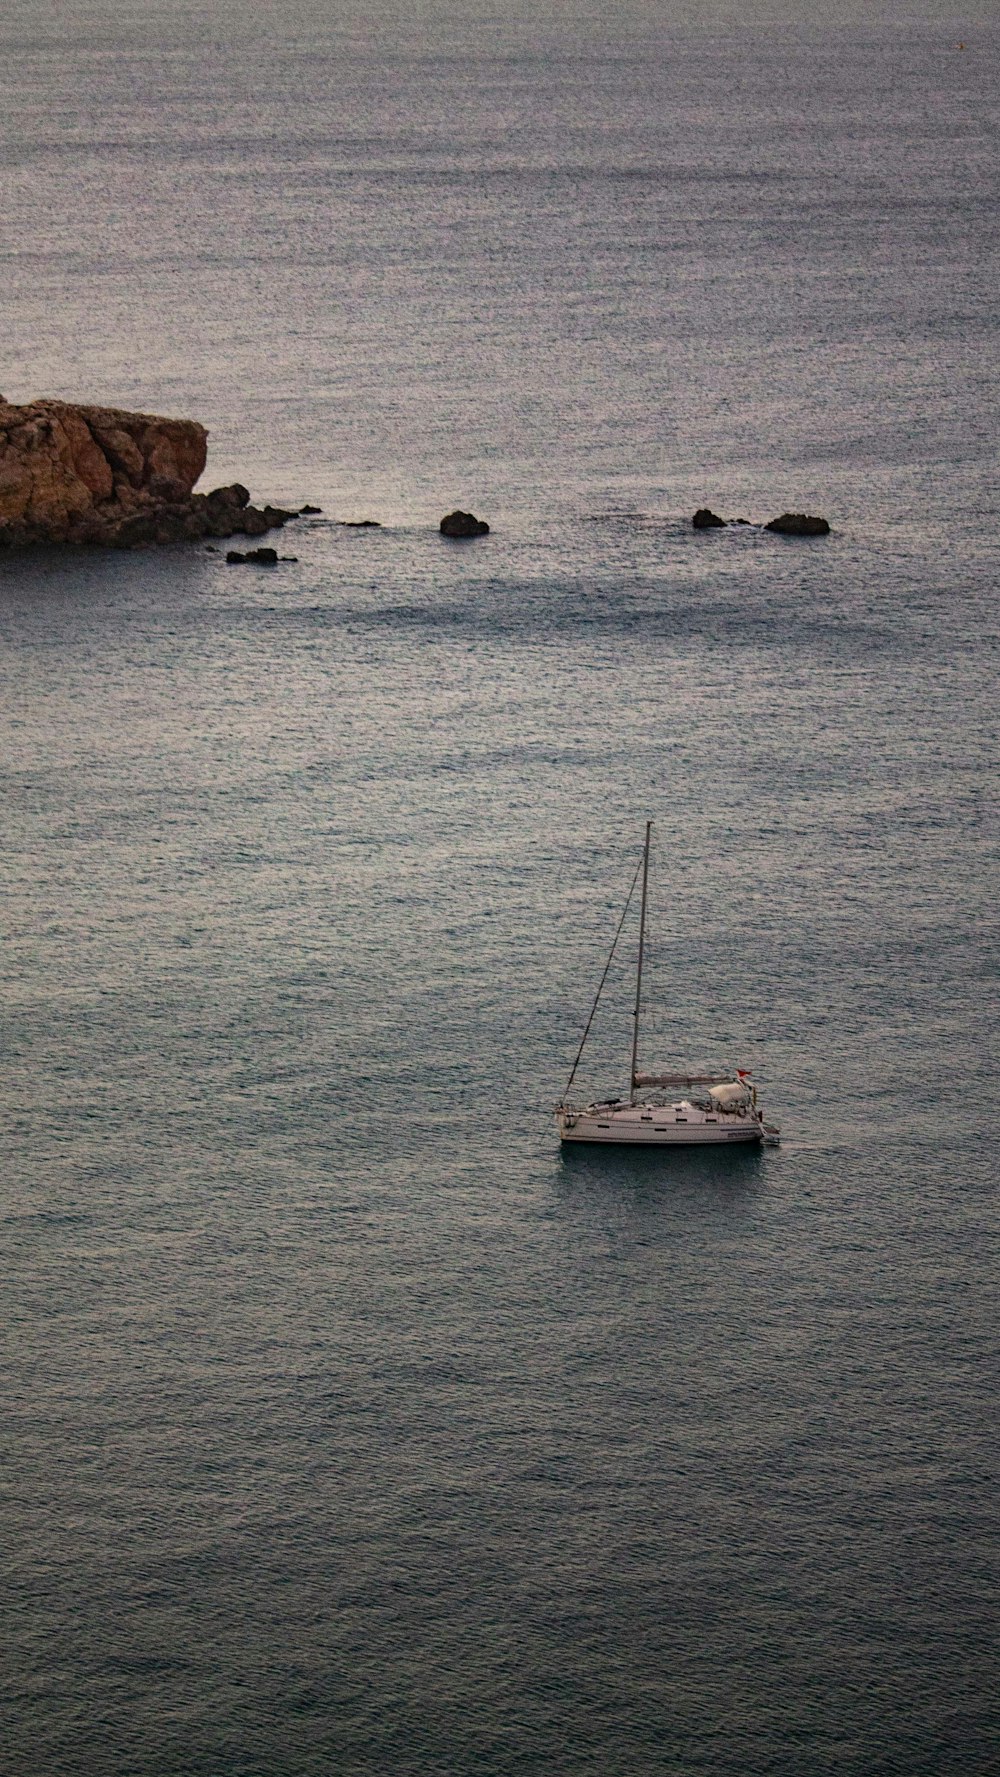 Un velero flotando en el océano cerca de una costa rocosa